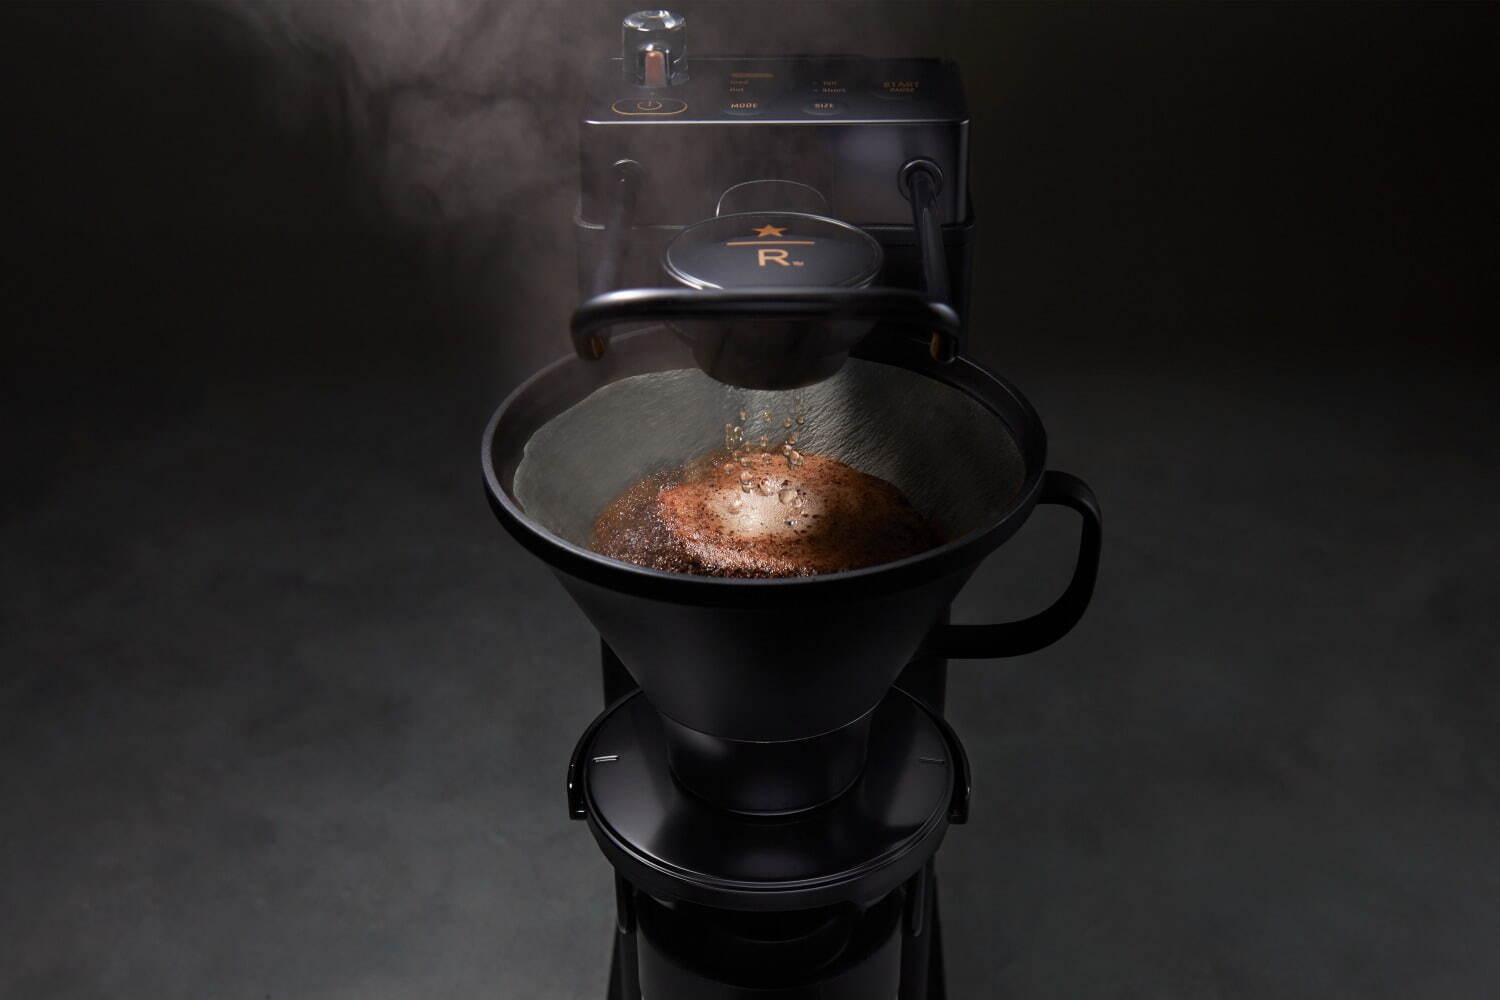 スターバックス リザーブ×バルミューダのコーヒーメーカー、特別な注湯 